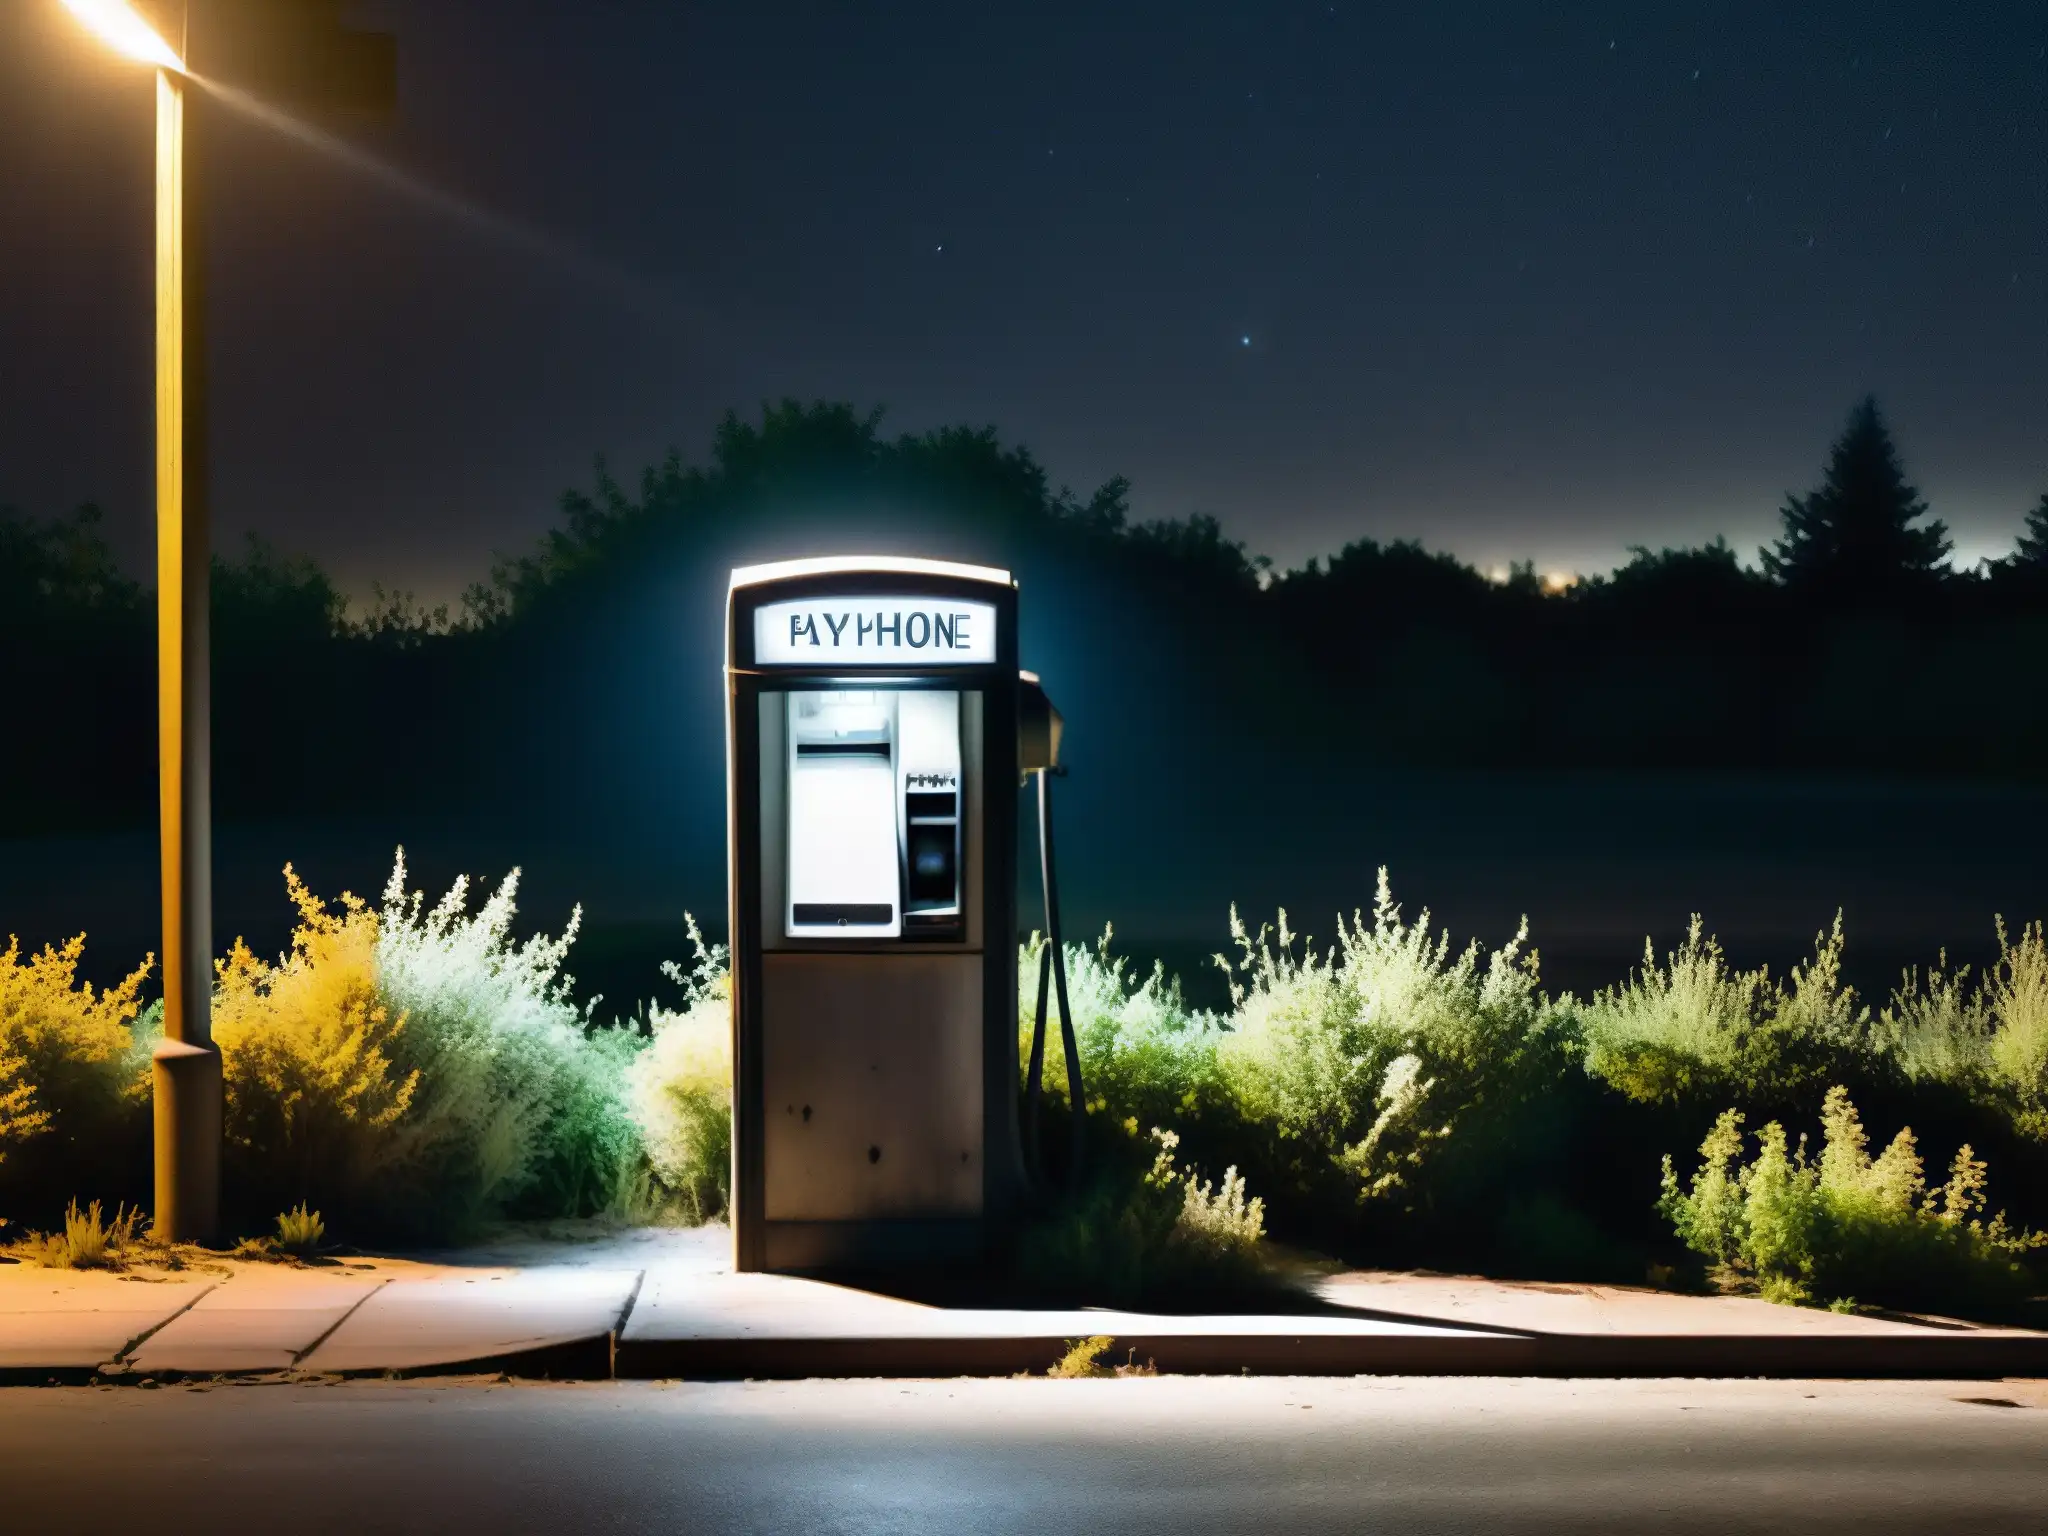 Una cabina telefónica abandonada en una calle desolada de noche